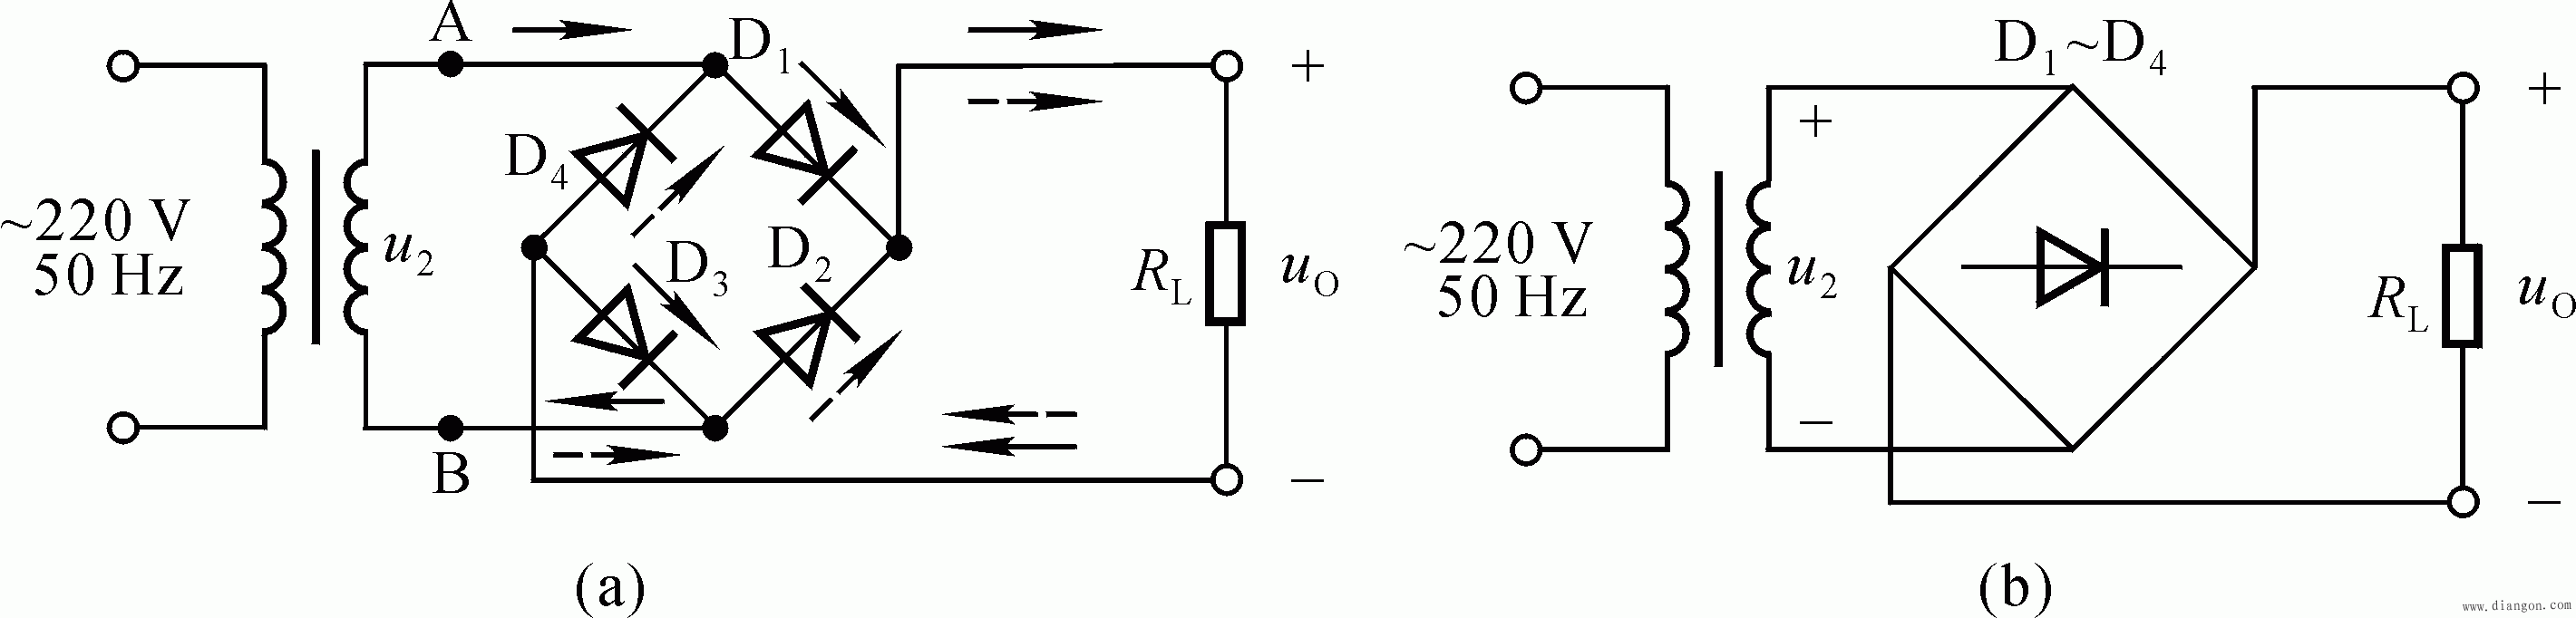 桥式整流电路(如上图b所示),它是由四个二极管接成电桥的形式构成的